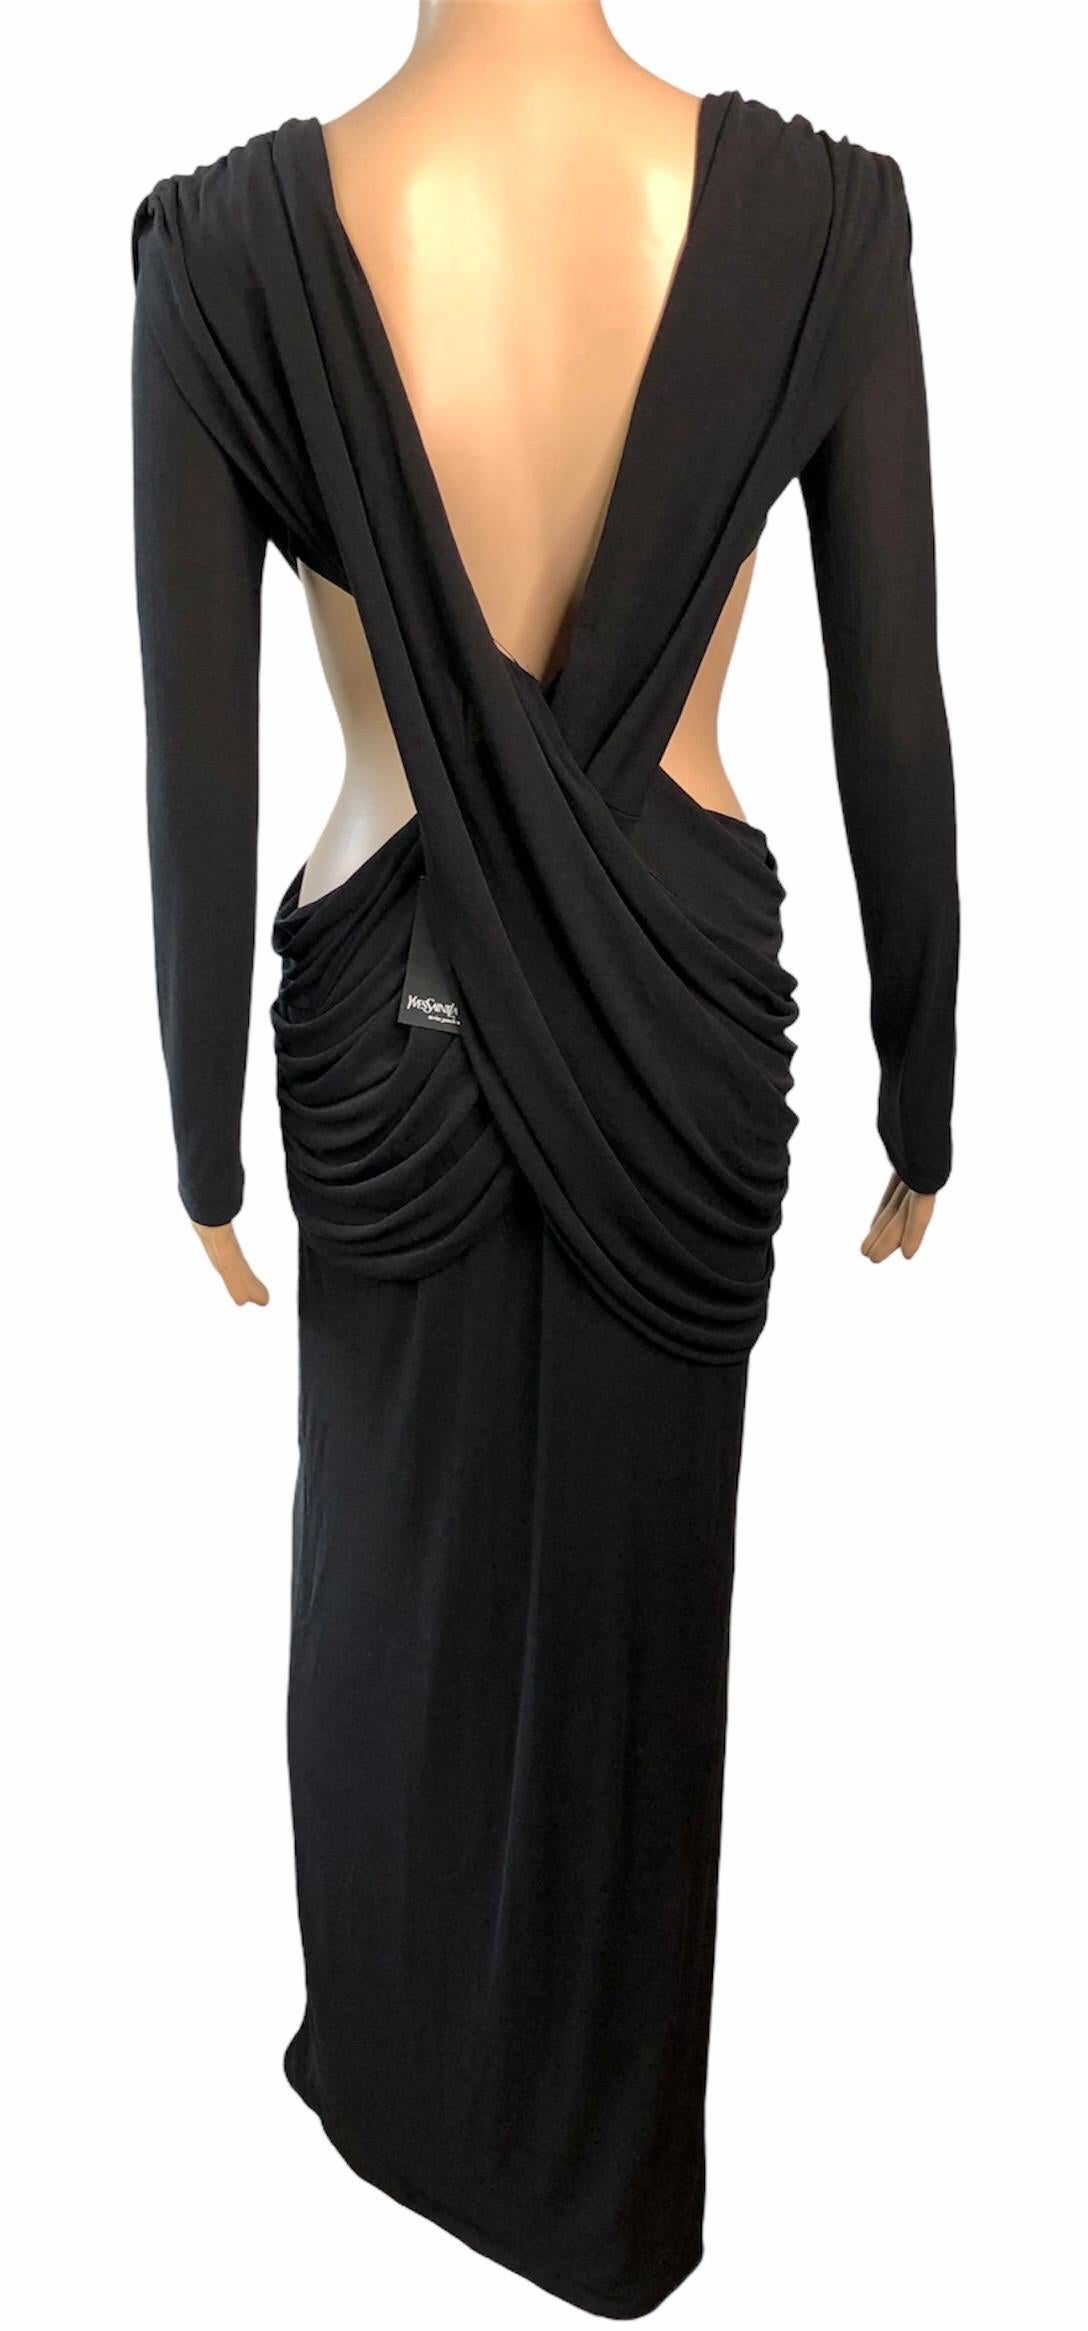 Yves Saint Laurent YSL c.2006 Unworn Plunging Cutout Black Evening Dress Gown 1